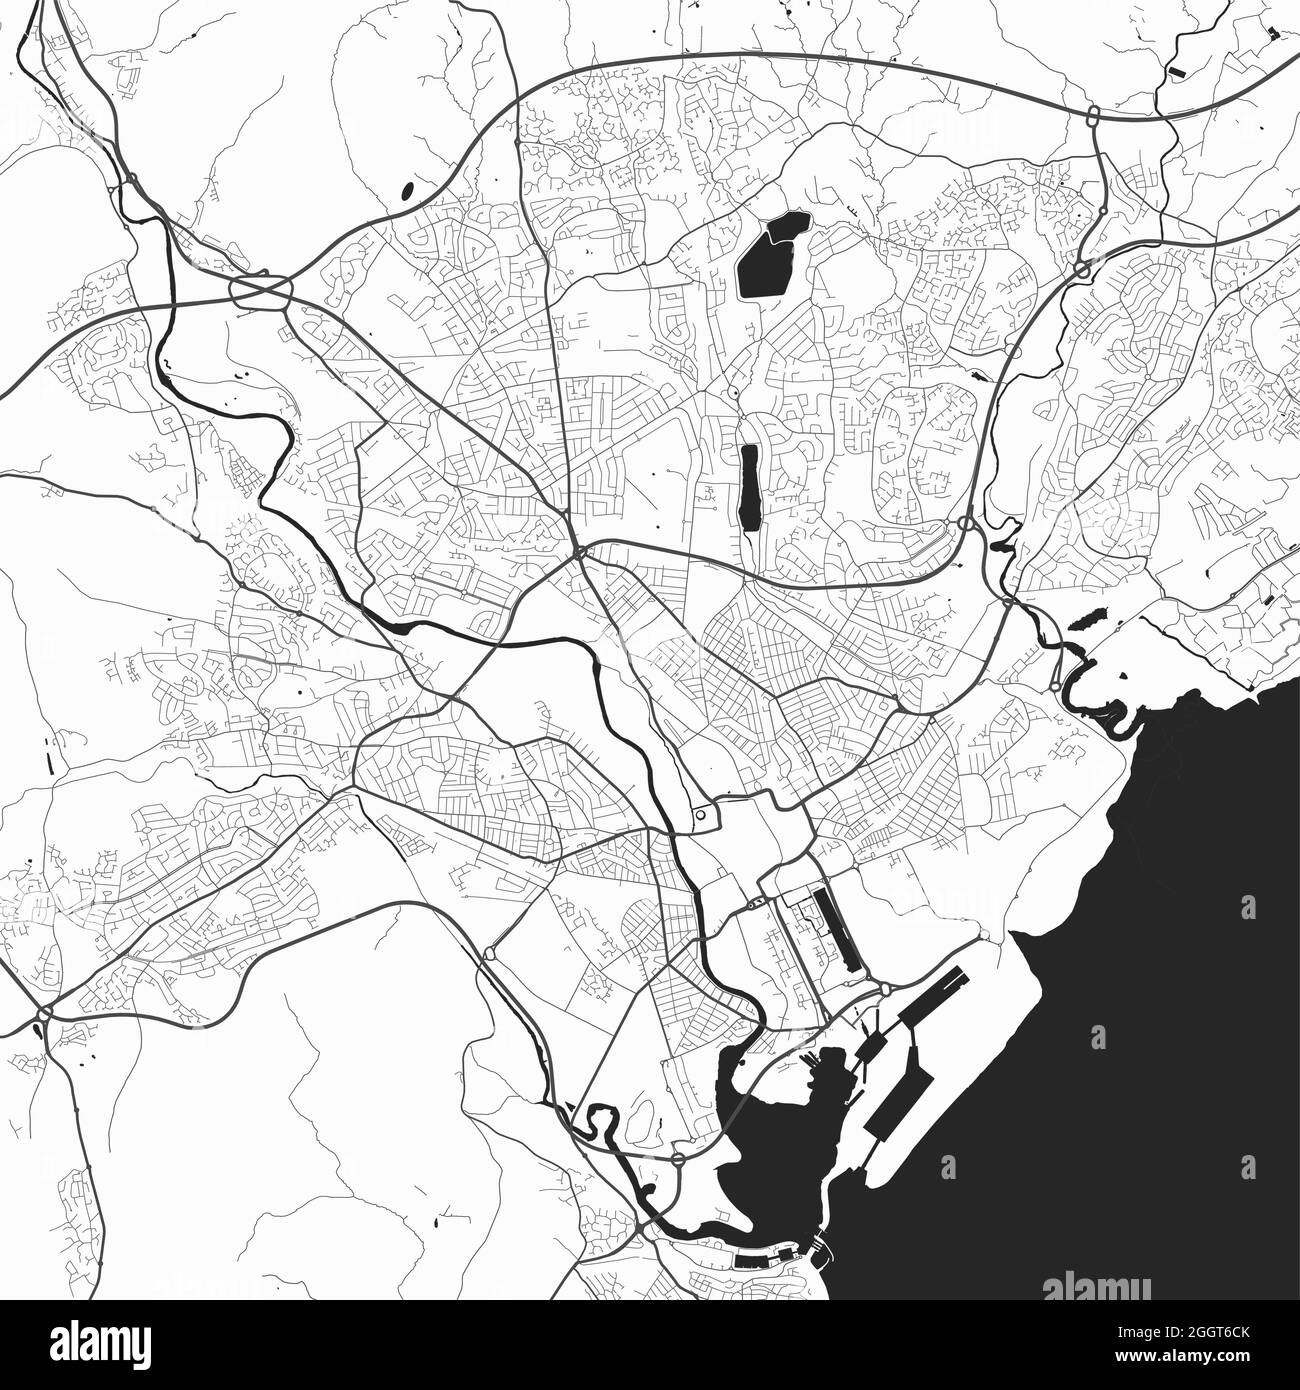 Stadtplan von Cardiff. Vektorgrafik, Cardiff-Karte Graustufen-Kunstposter. Straßenkarte mit Straßen, Ansicht der Metropolregion. Stock Vektor